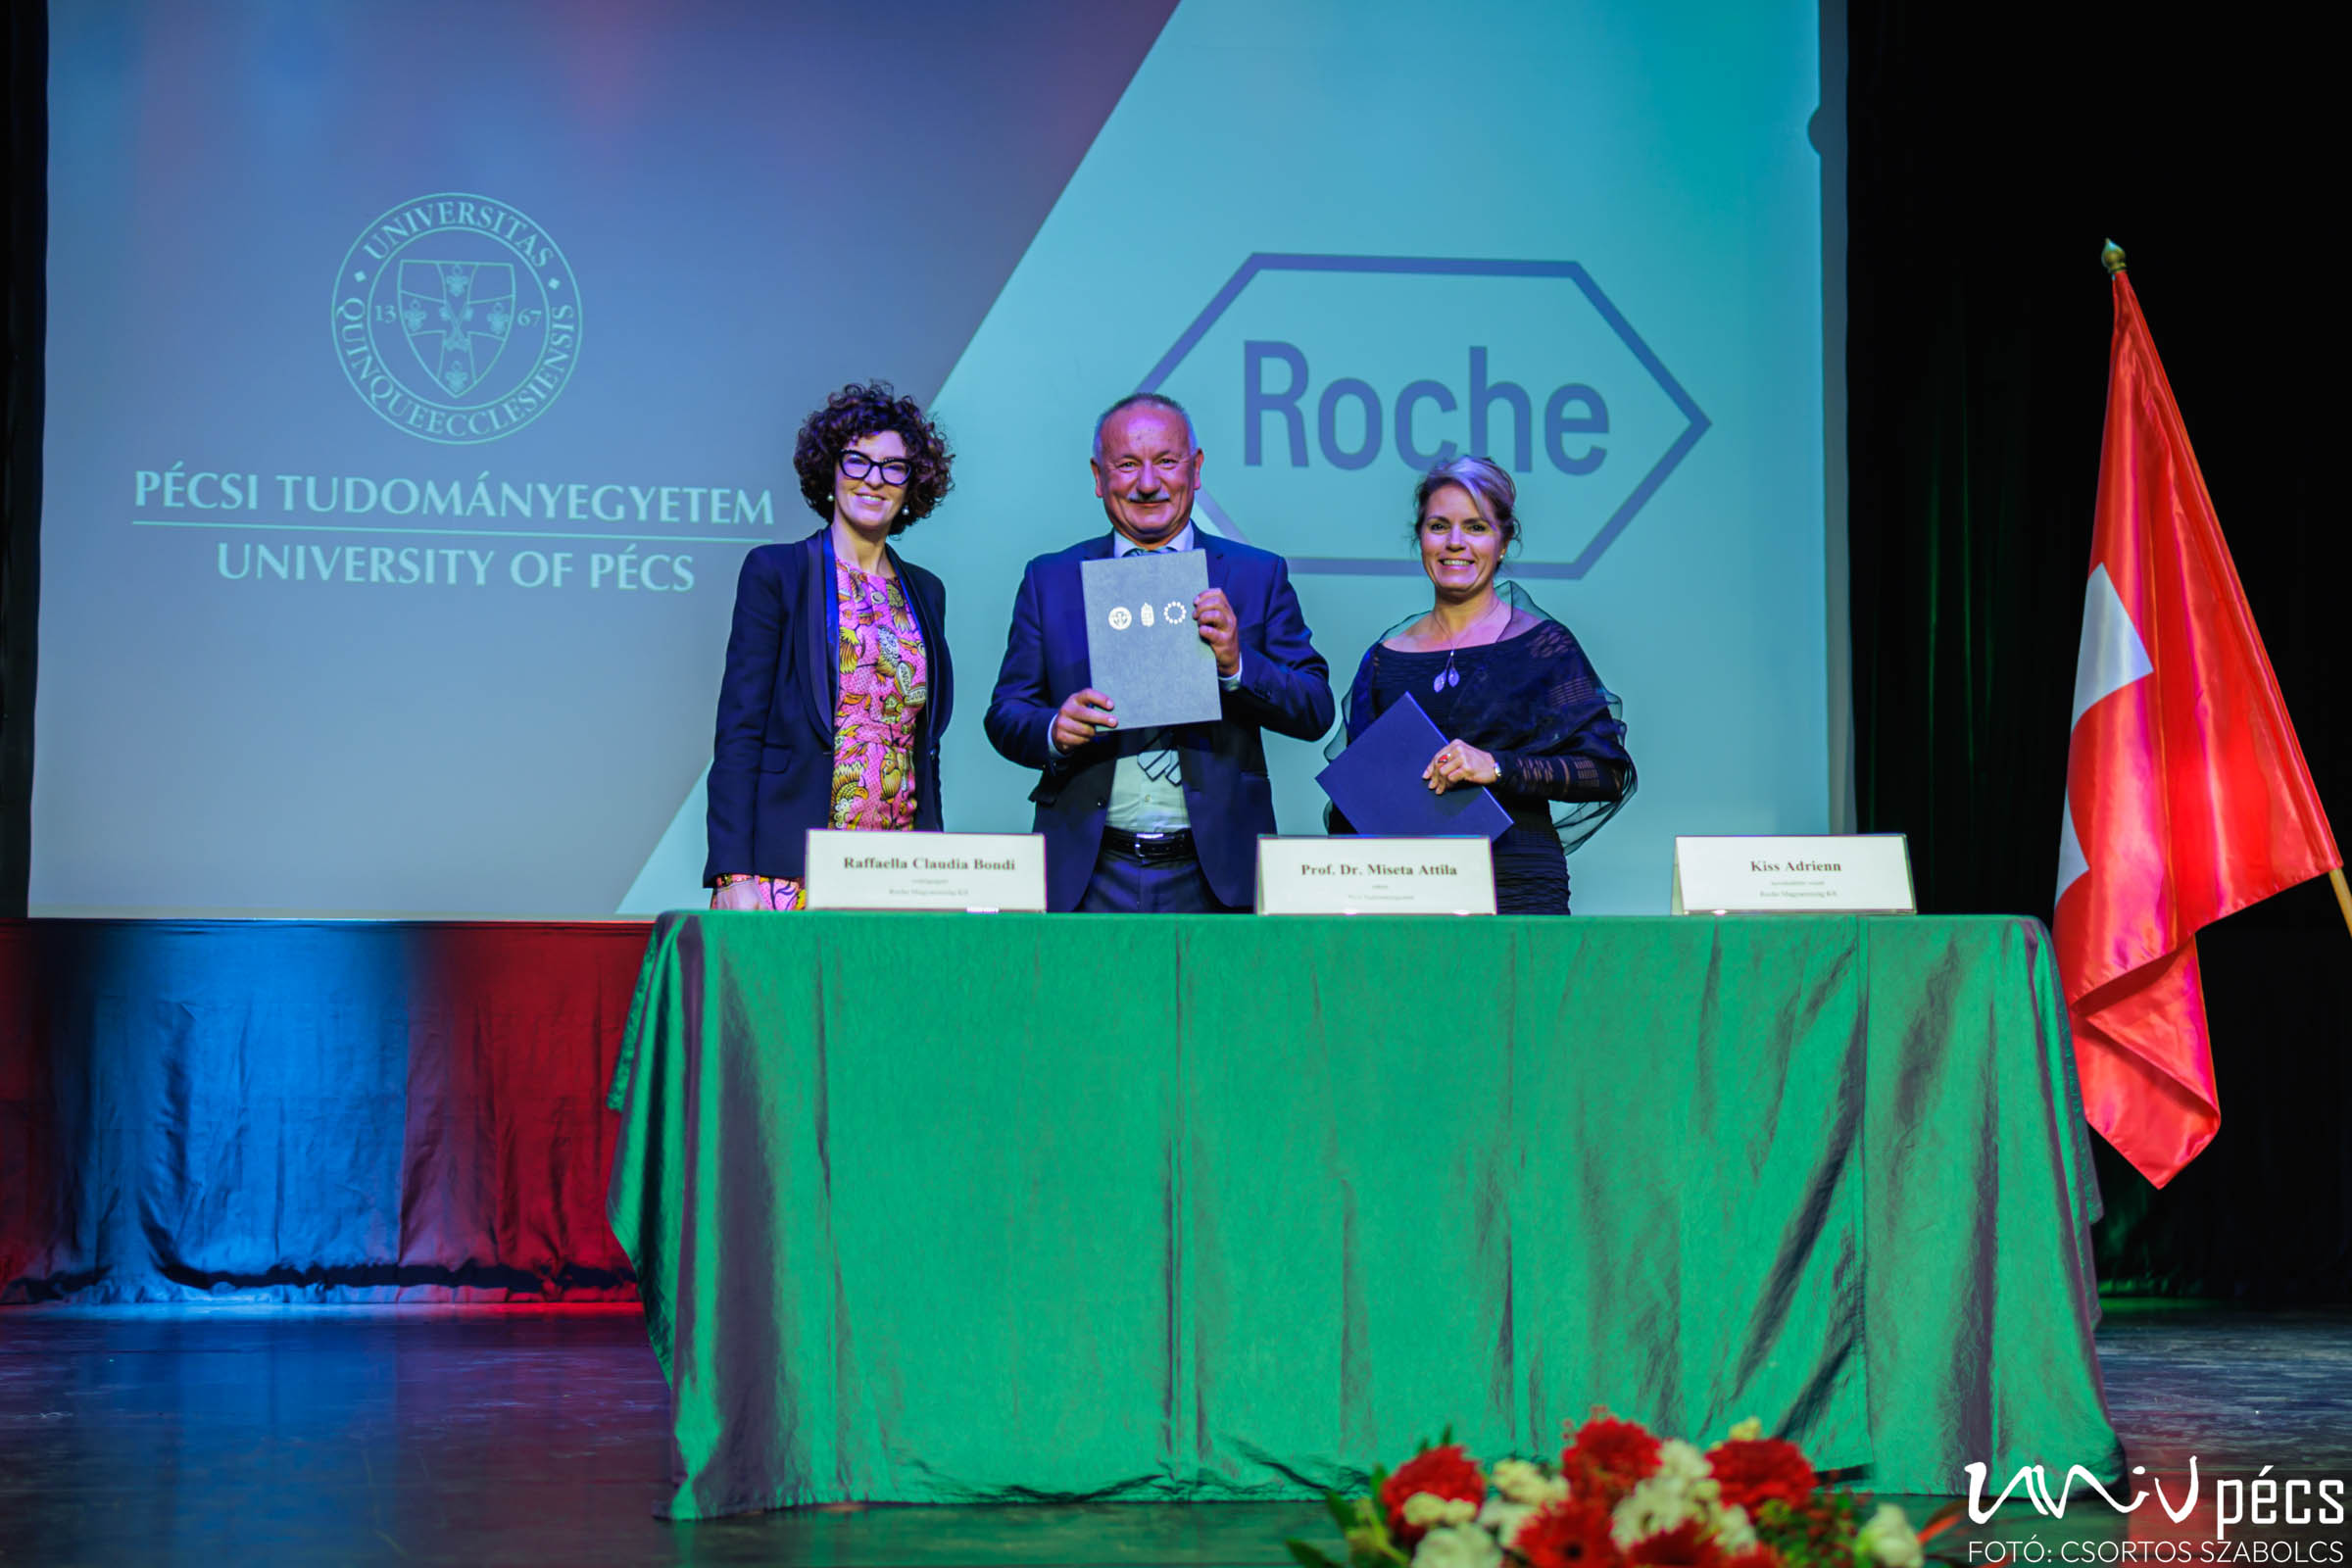 Együttműködik a jövőben a Roche és a Pécsi Tudományegyetem